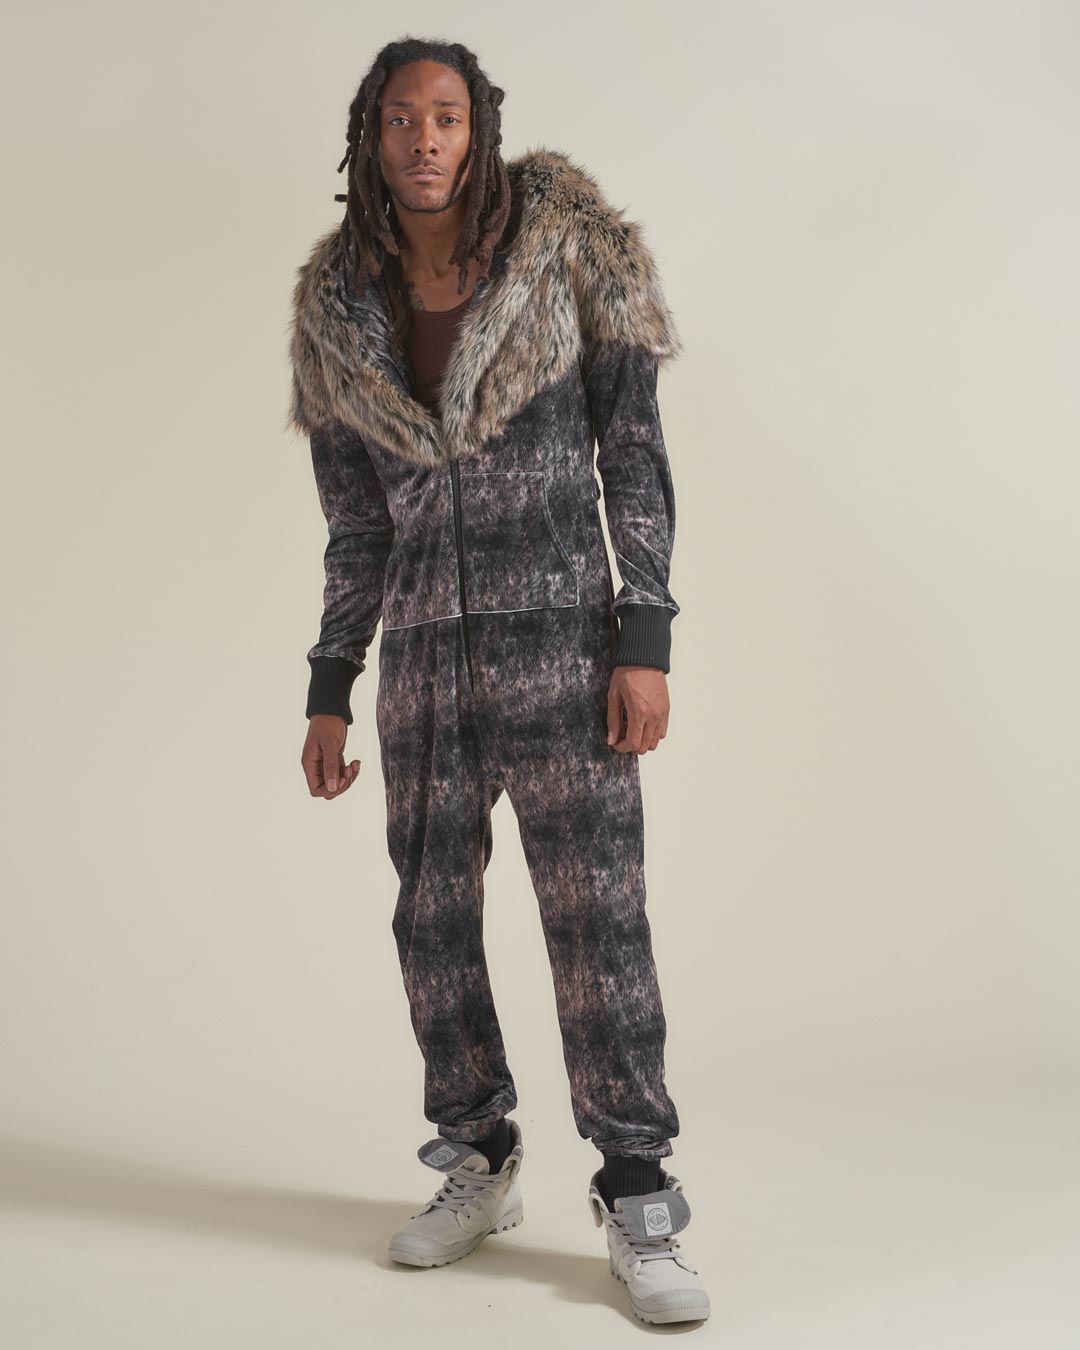 Man wearing Grazer Wolf Artist Edition Faux Fur Animal Onesie, front view 4